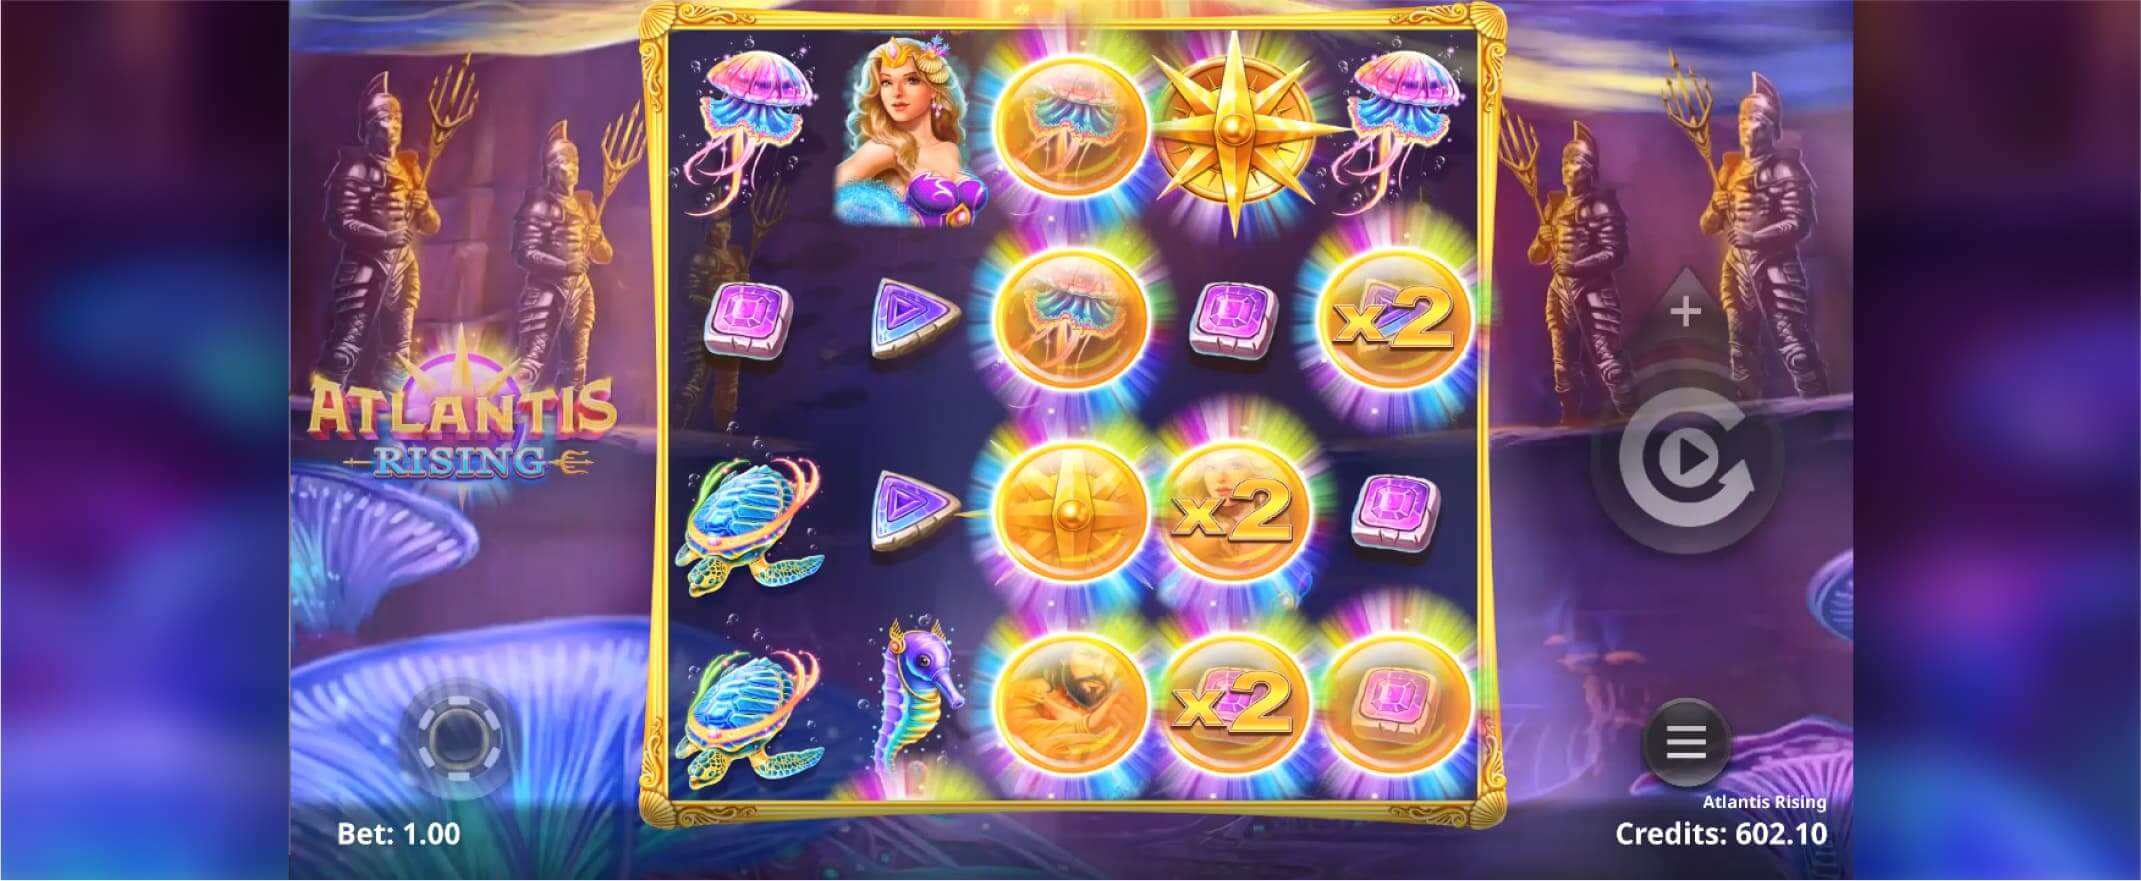 Atlantis Rising slot screenshot of the reels